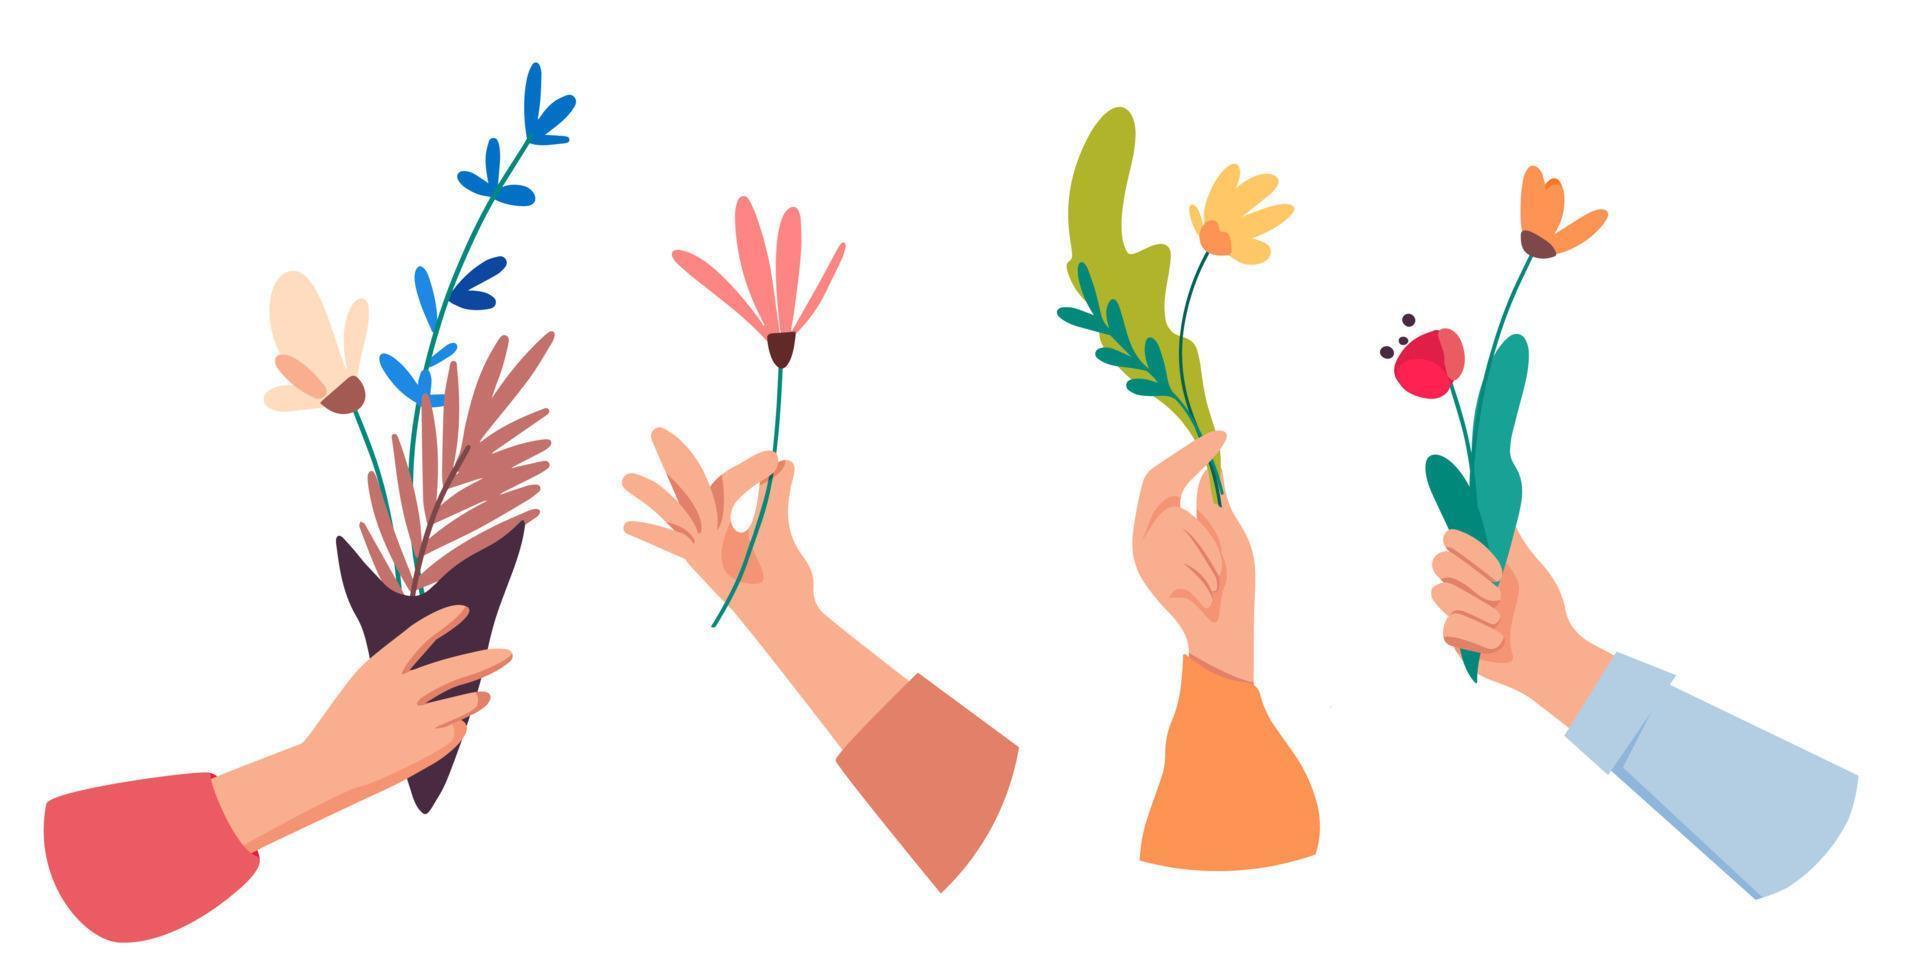 colección de manos en diferentes gestos sosteniendo o dando ramos o flores. concepto de vector plano de vacaciones de primavera. paquete de elementos de diseño decorativo floral aislado sobre fondo blanco.